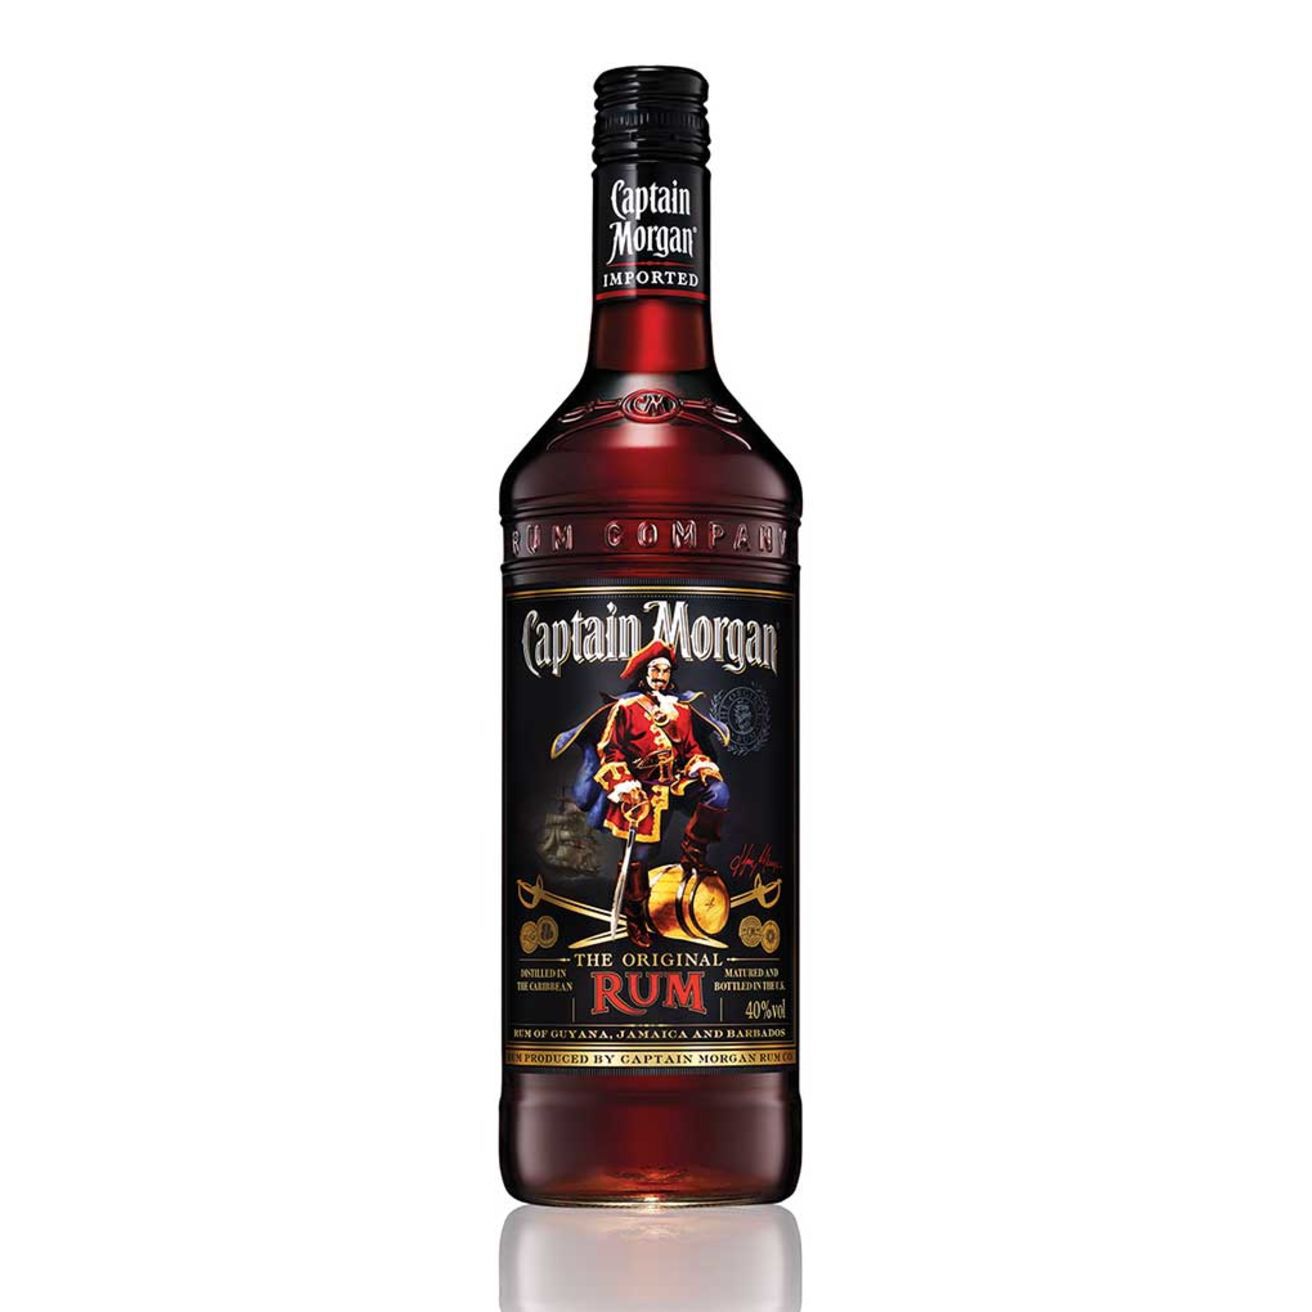 Captain Morgan The Original Rum Review